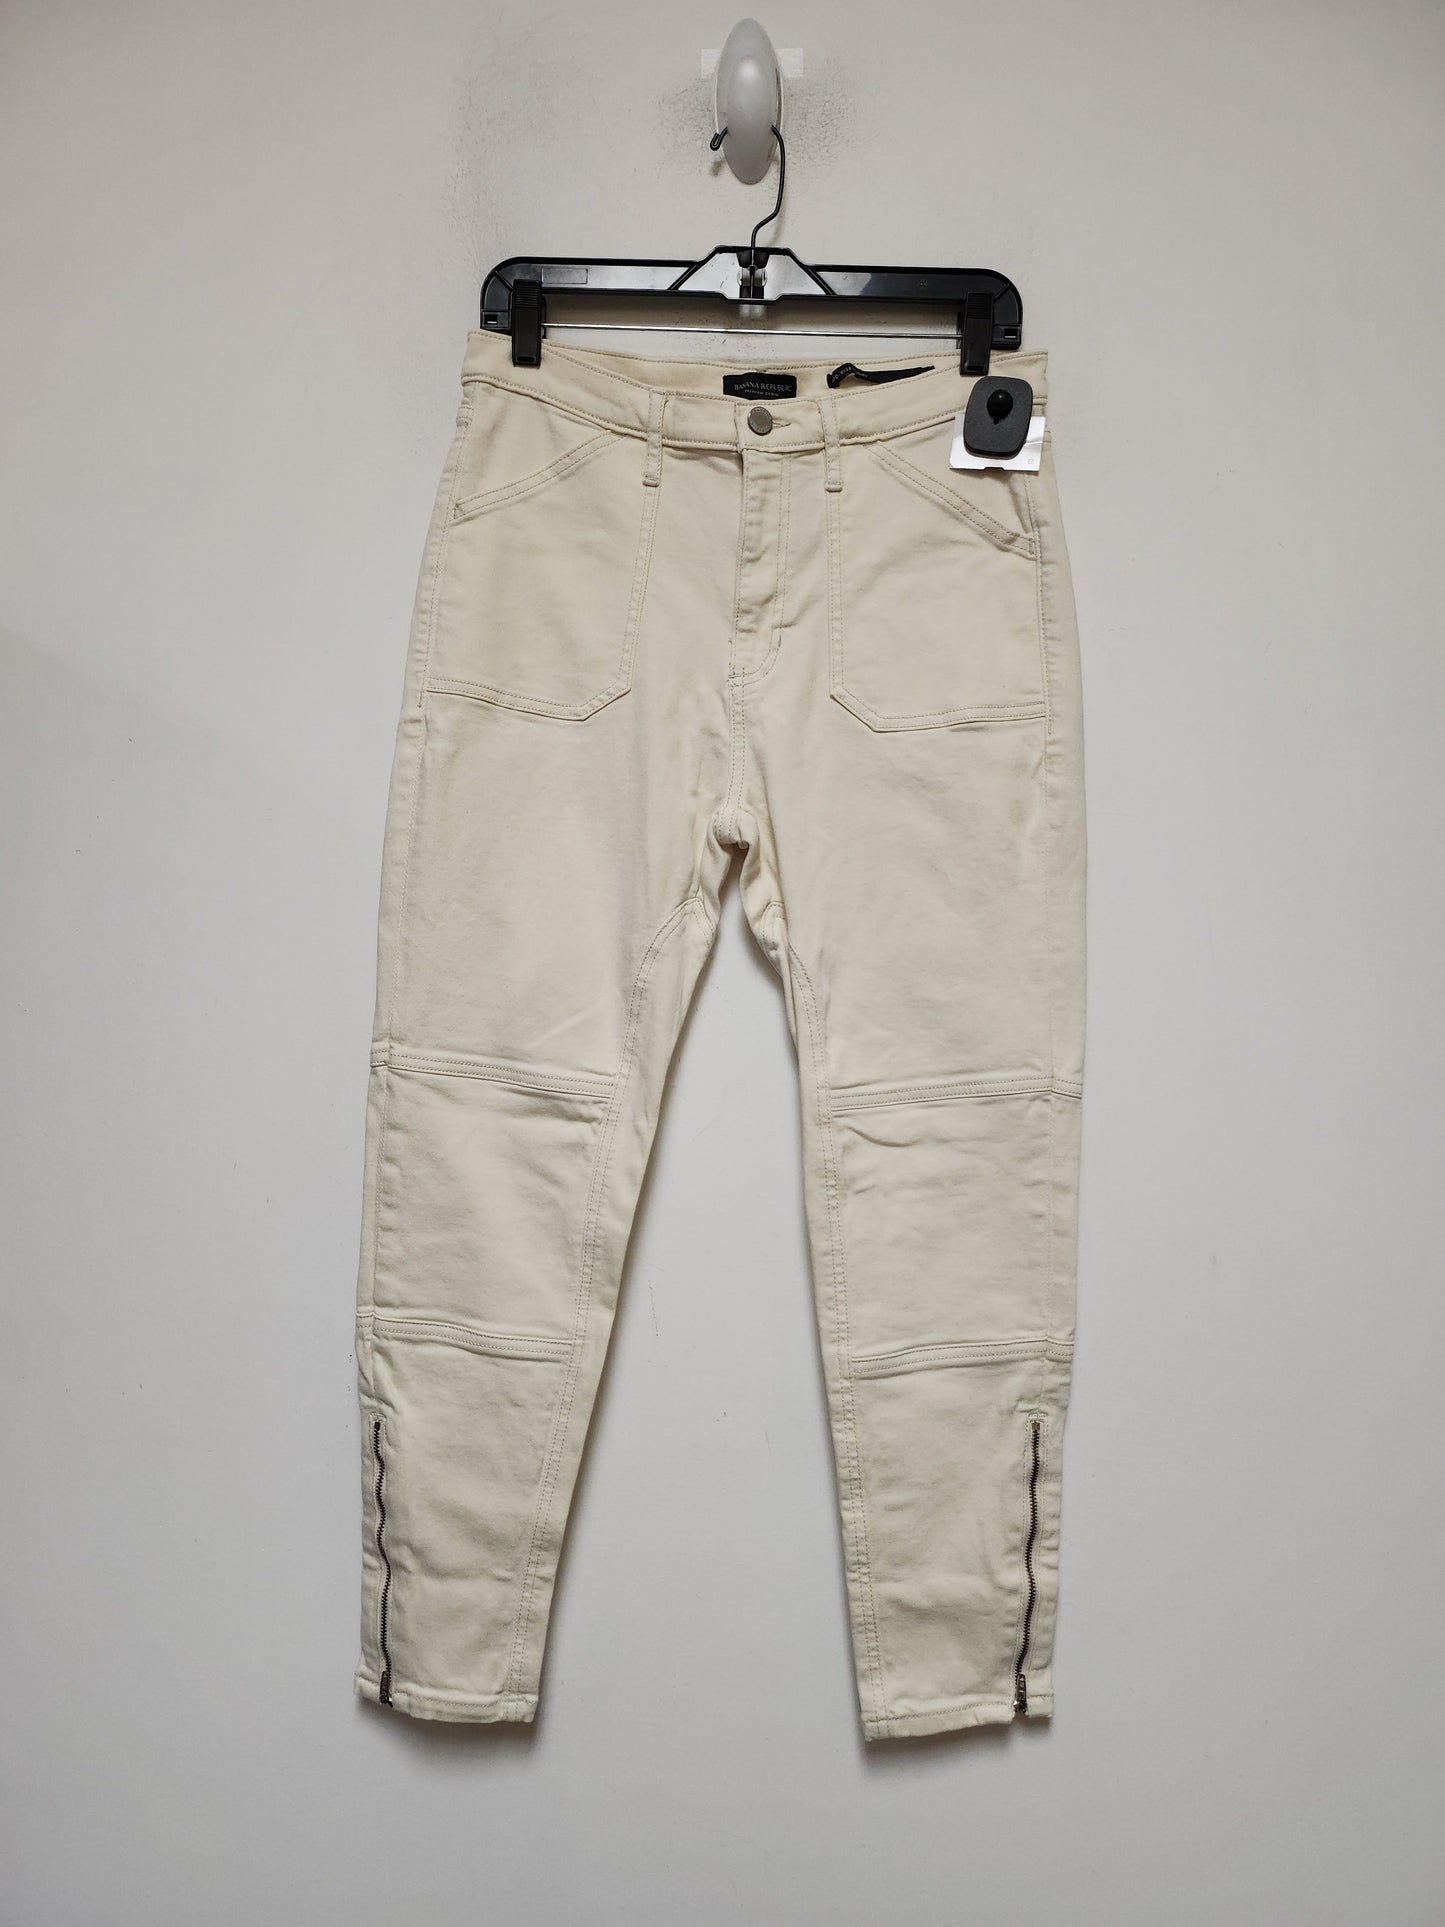 Tan Denim Jeans Cropped Banana Republic, Size 8